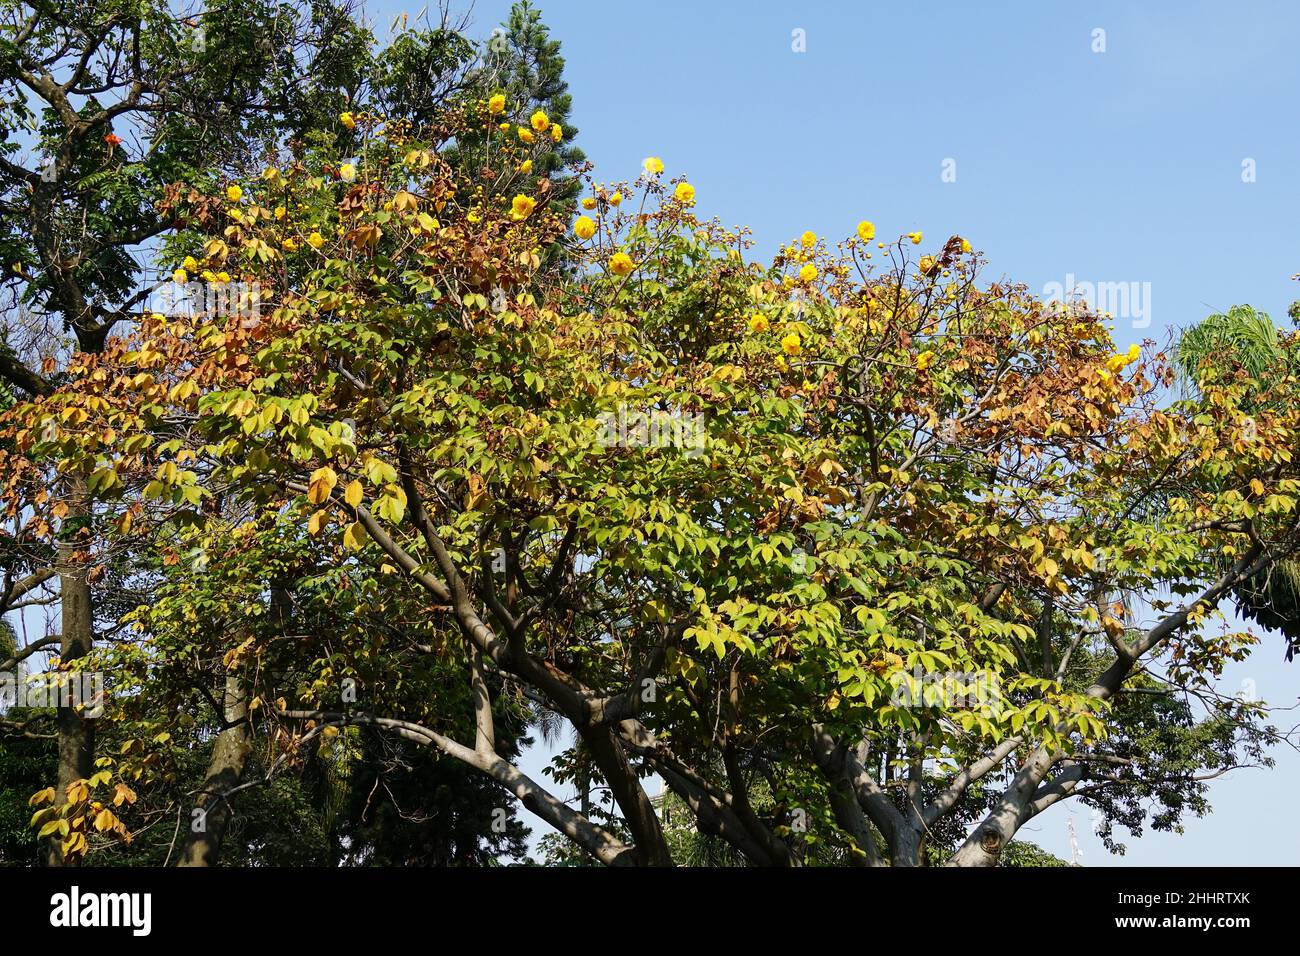 Butterblumenbaum, Cochlospermum vitifolium, Mexico, North America Stock Photo